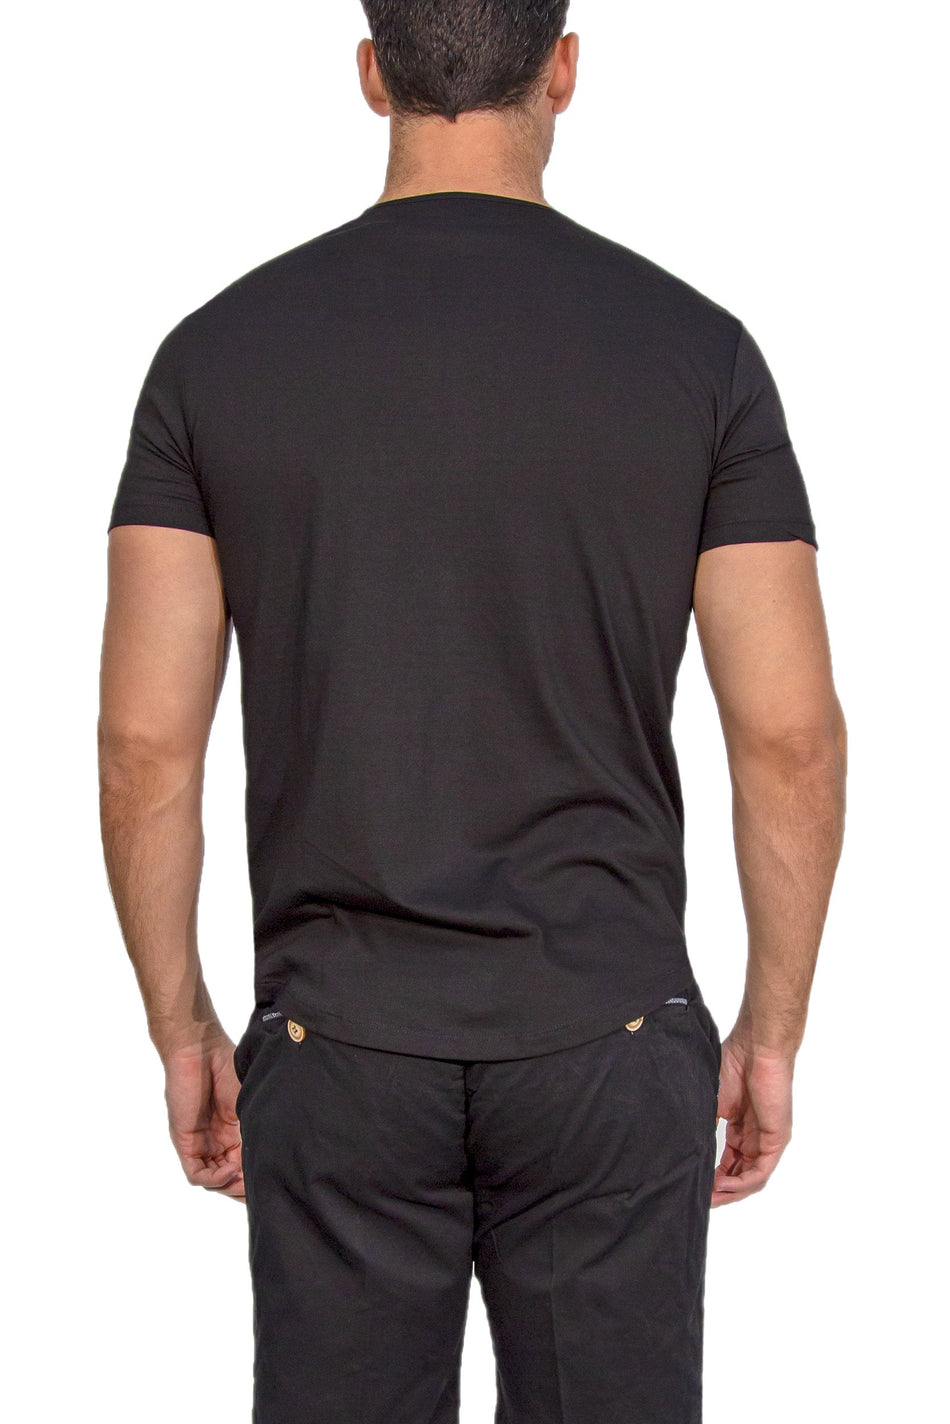 161684-black-t-shirt